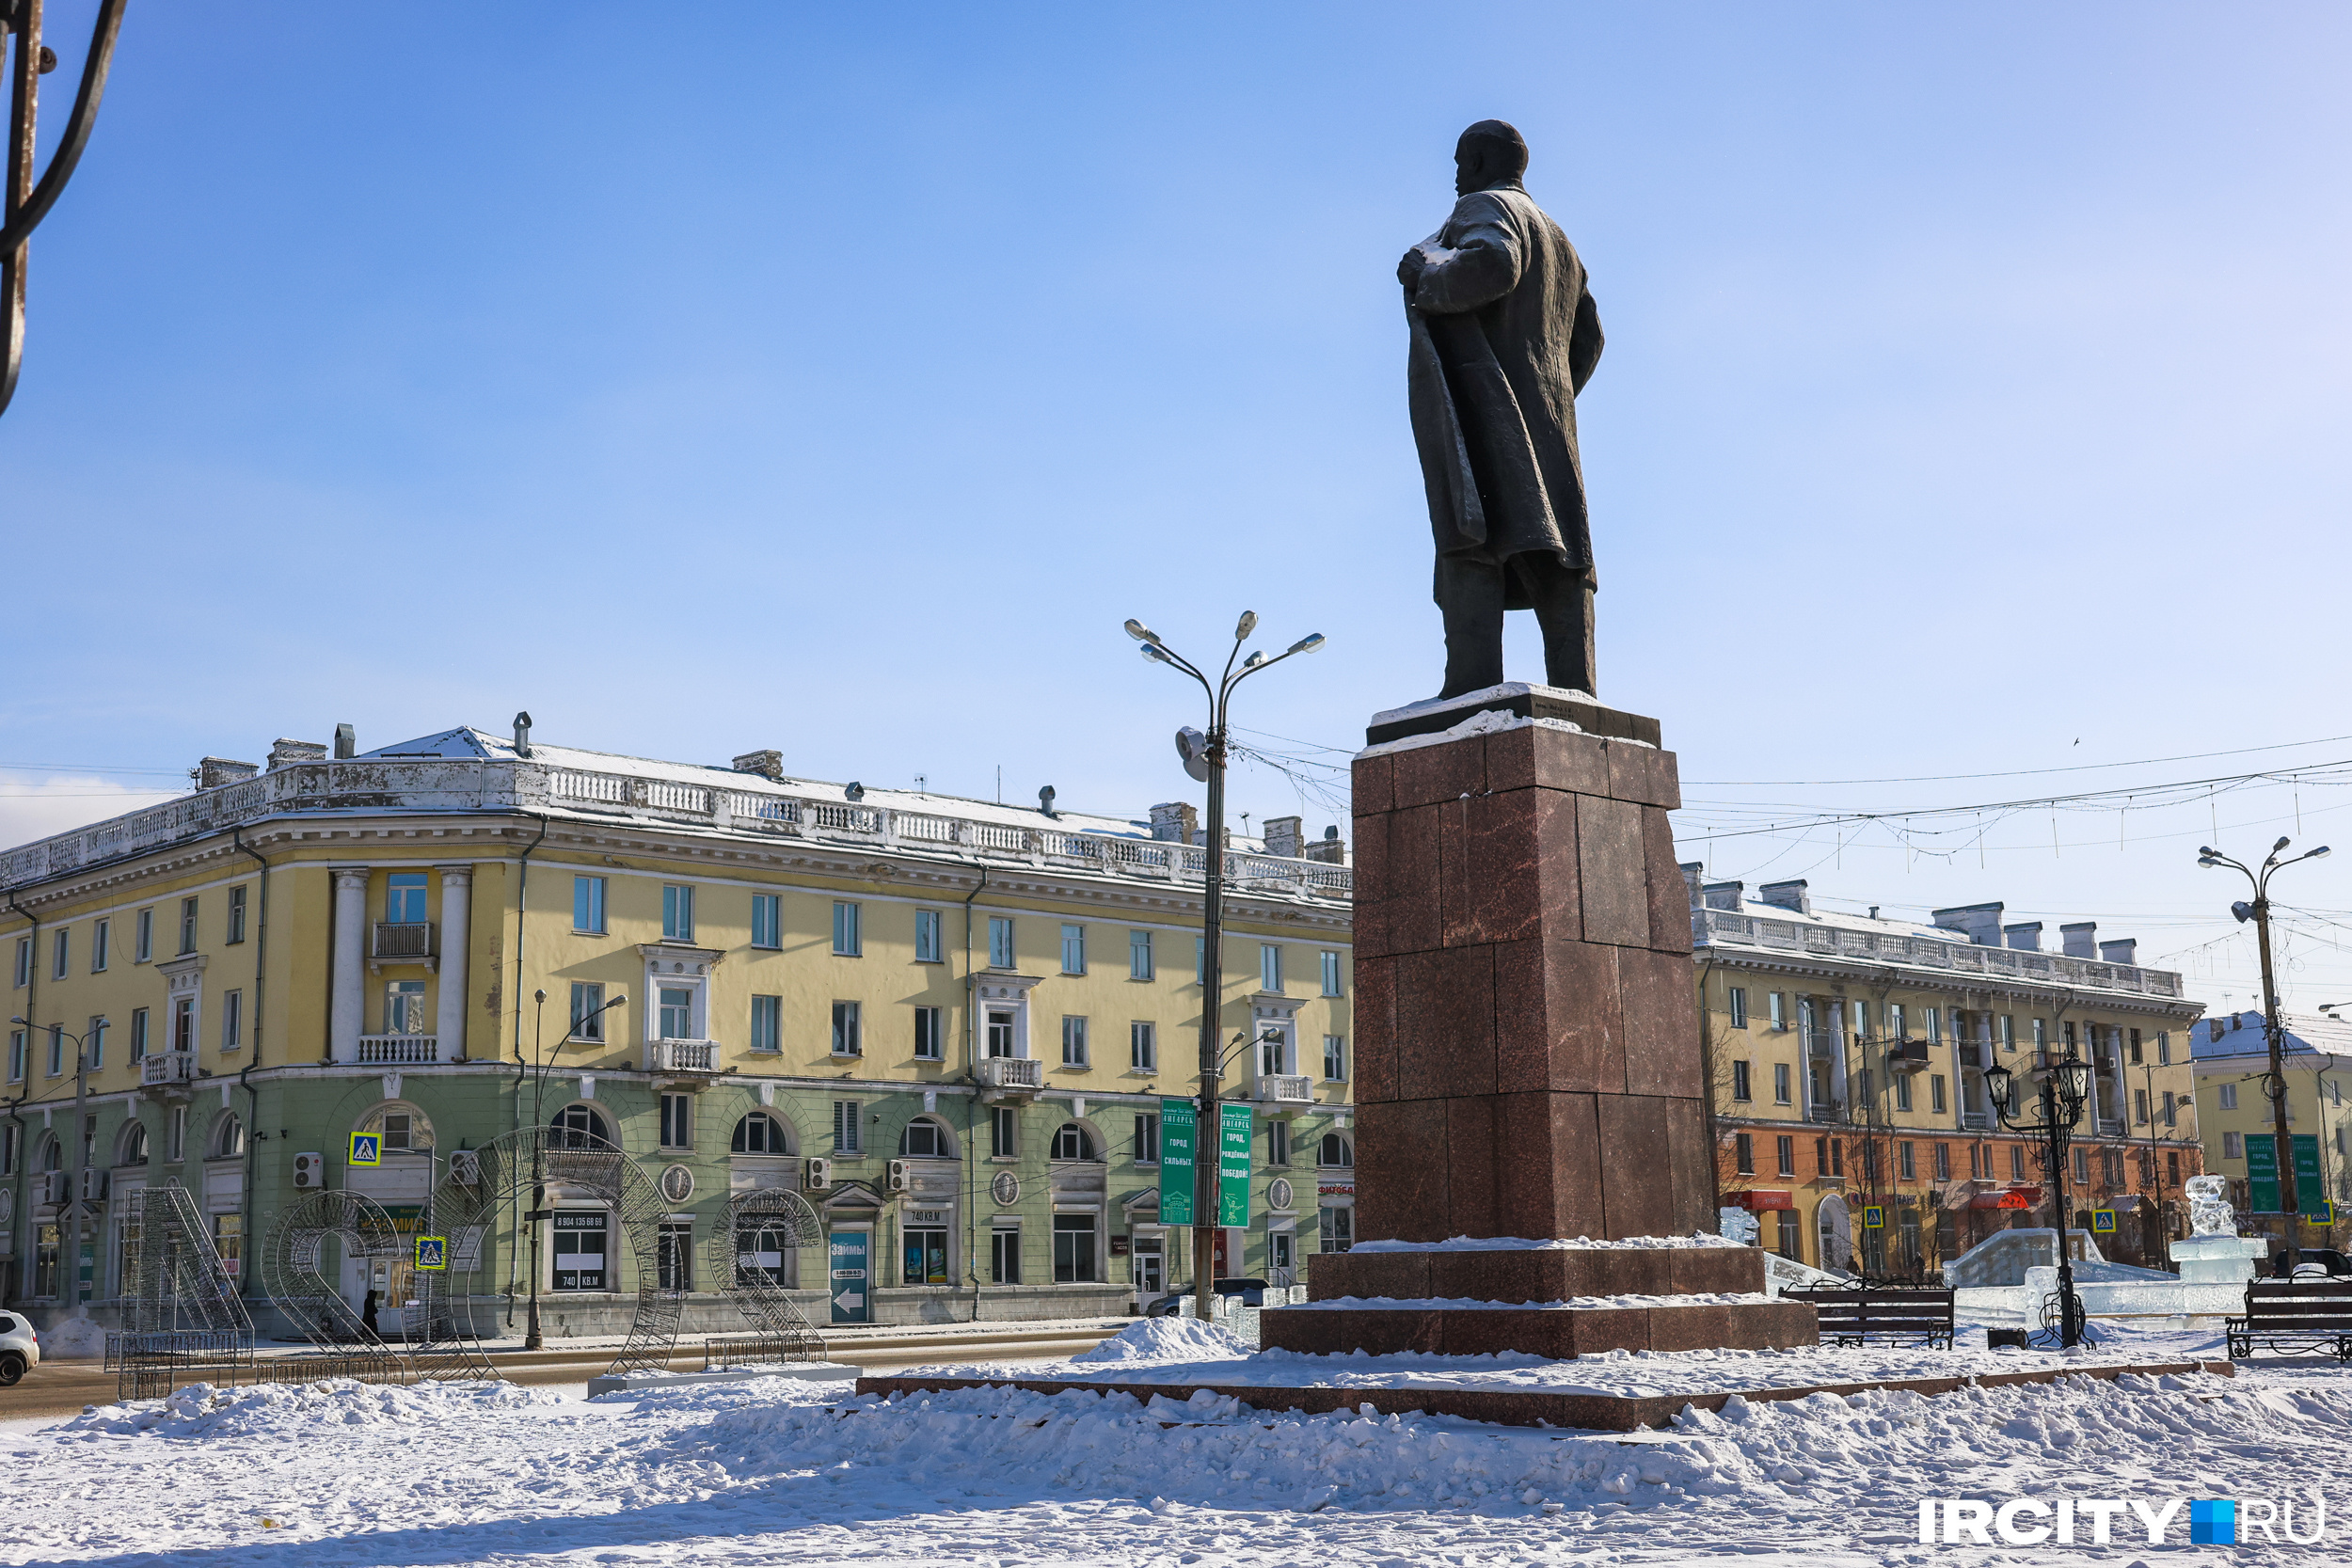 В центре главной площади стоит памятник вождю пролетариата